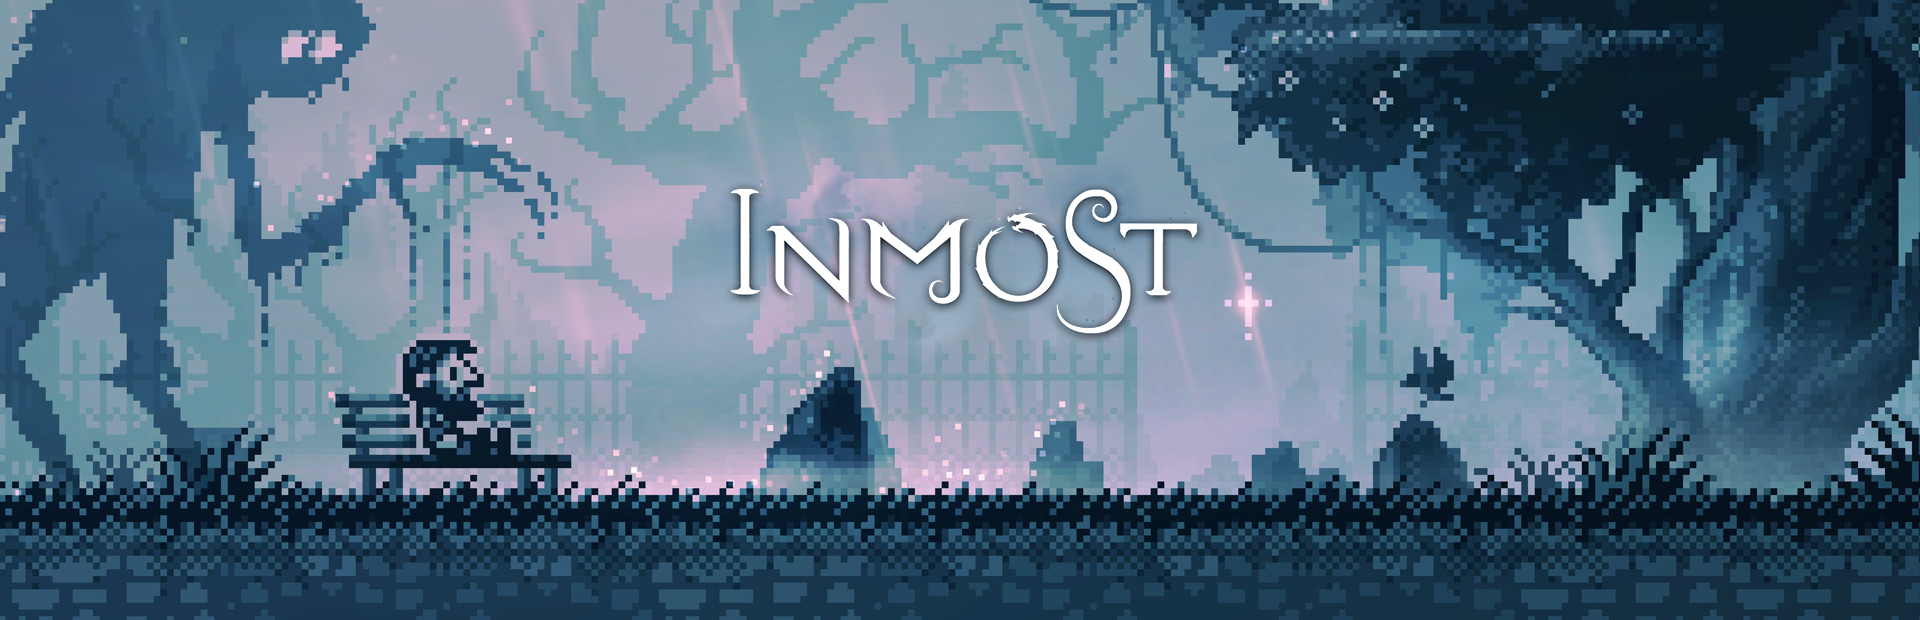 دانلود بازی INMOST برای پی سی | گیمباتو